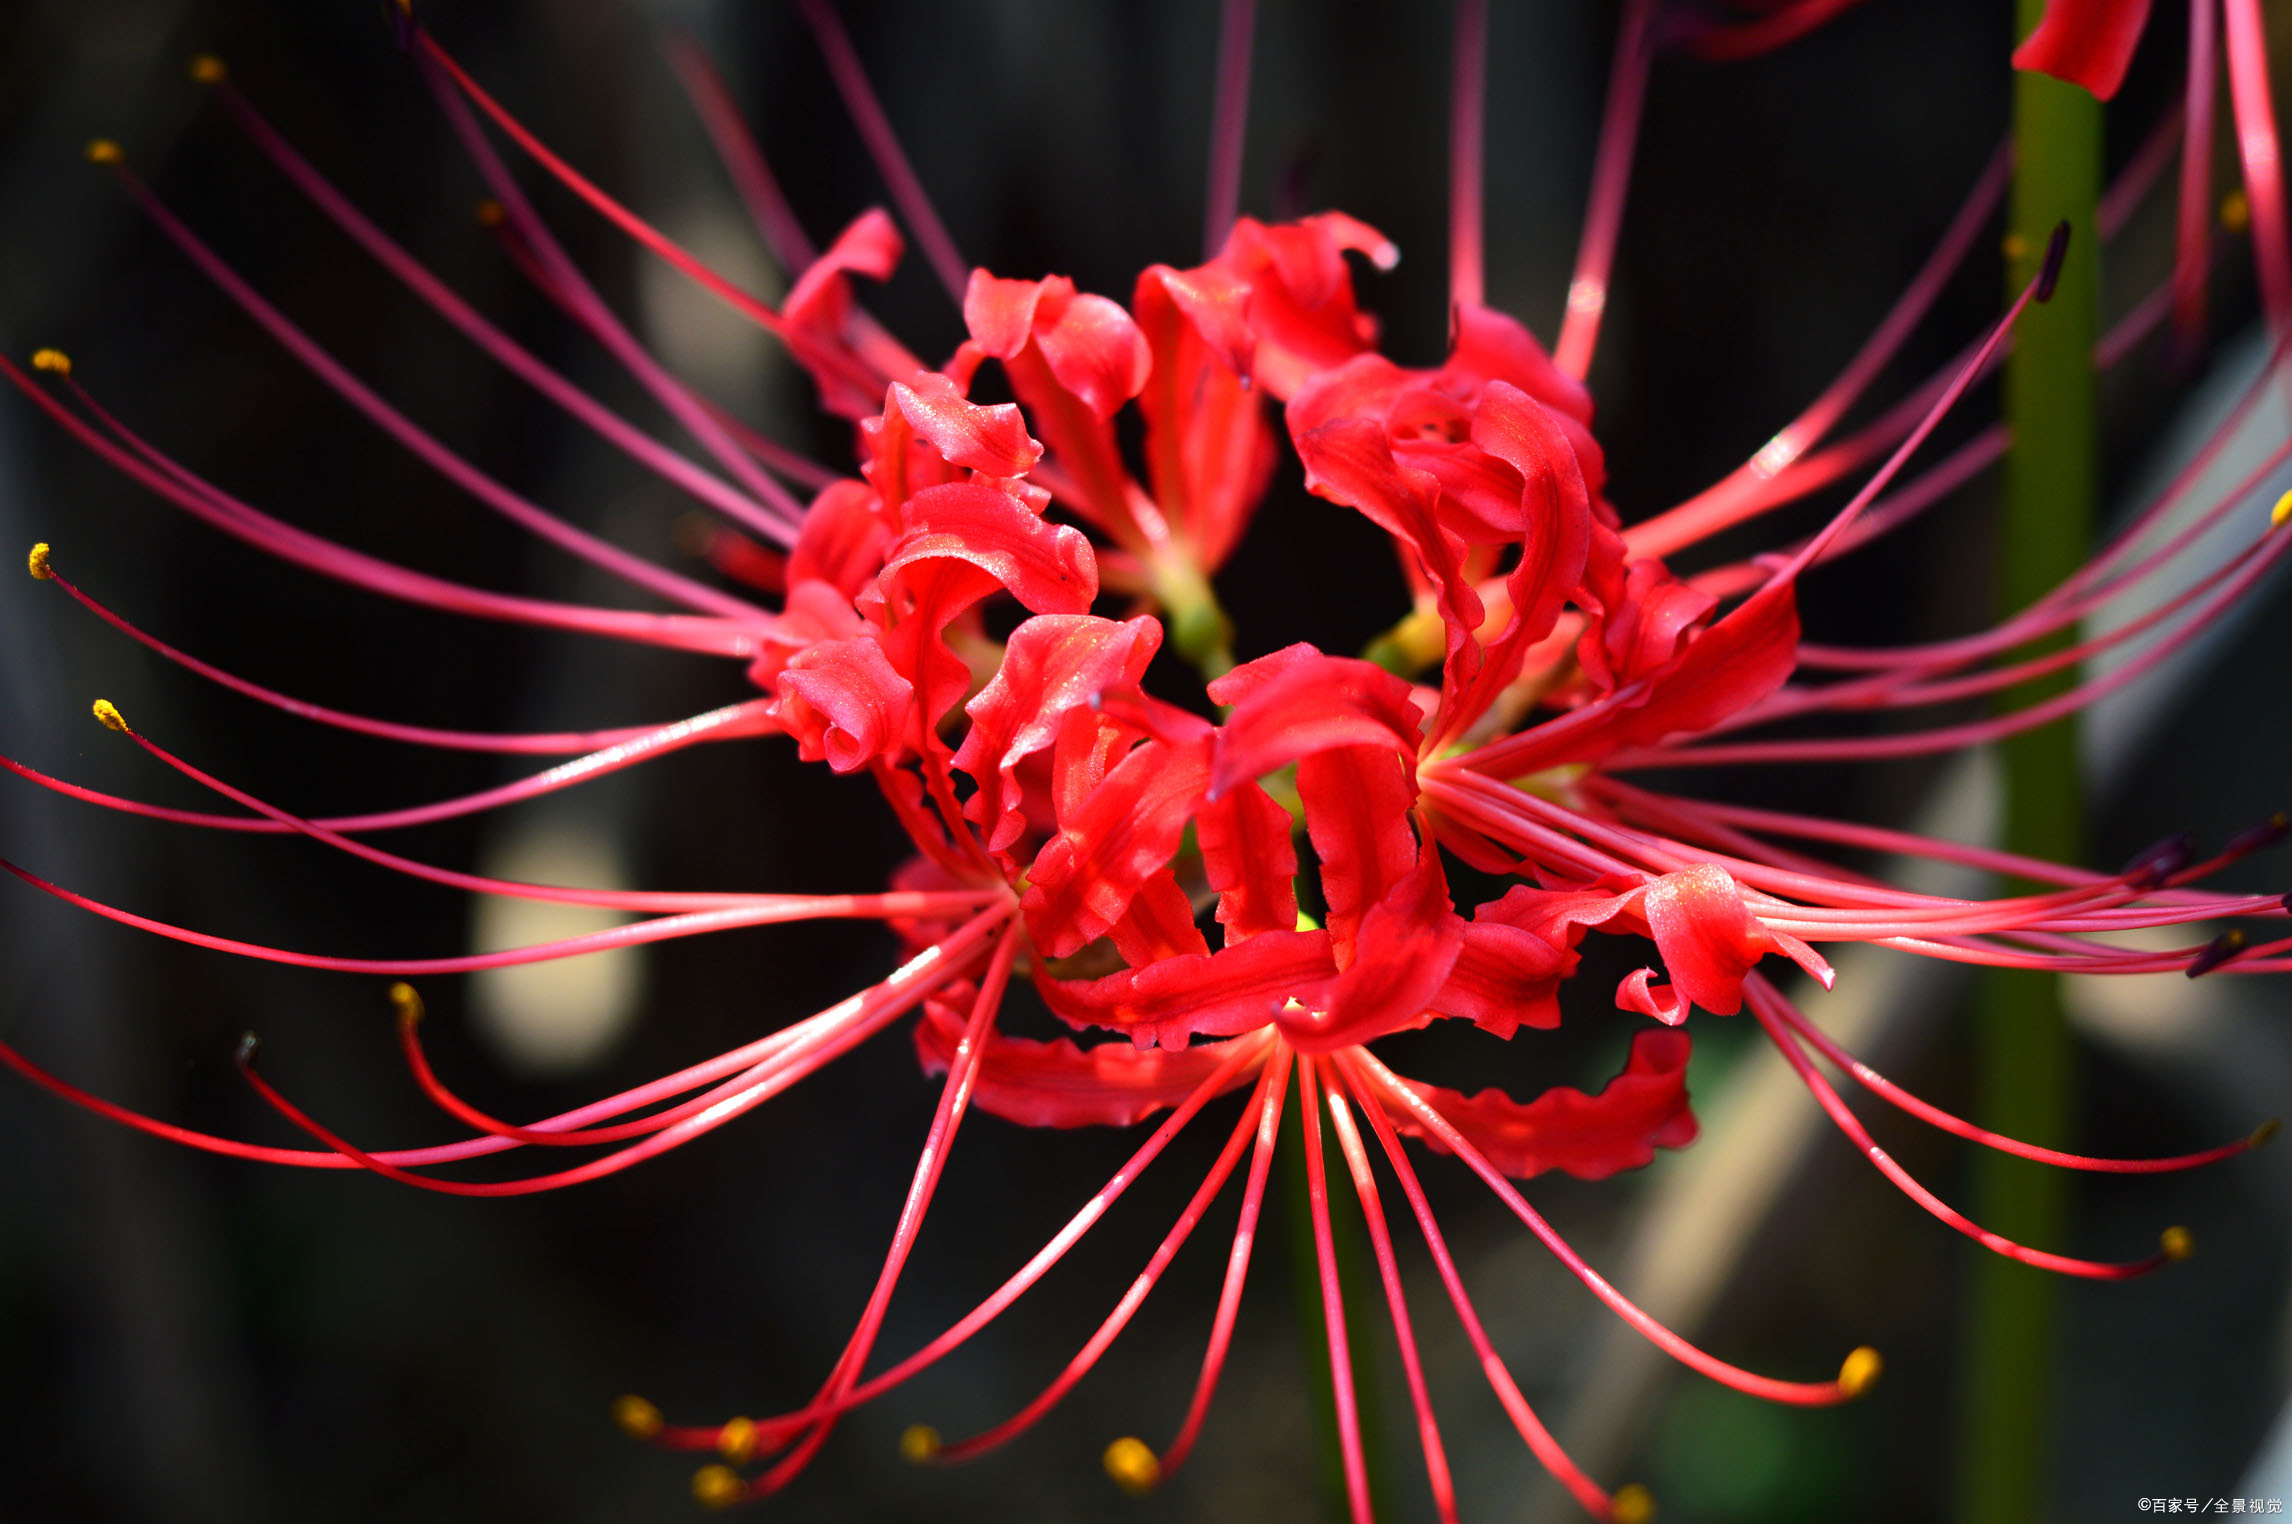 彼岸花又叫做曼珠沙华,是盛开在冥界忘川彼岸的一种艳花